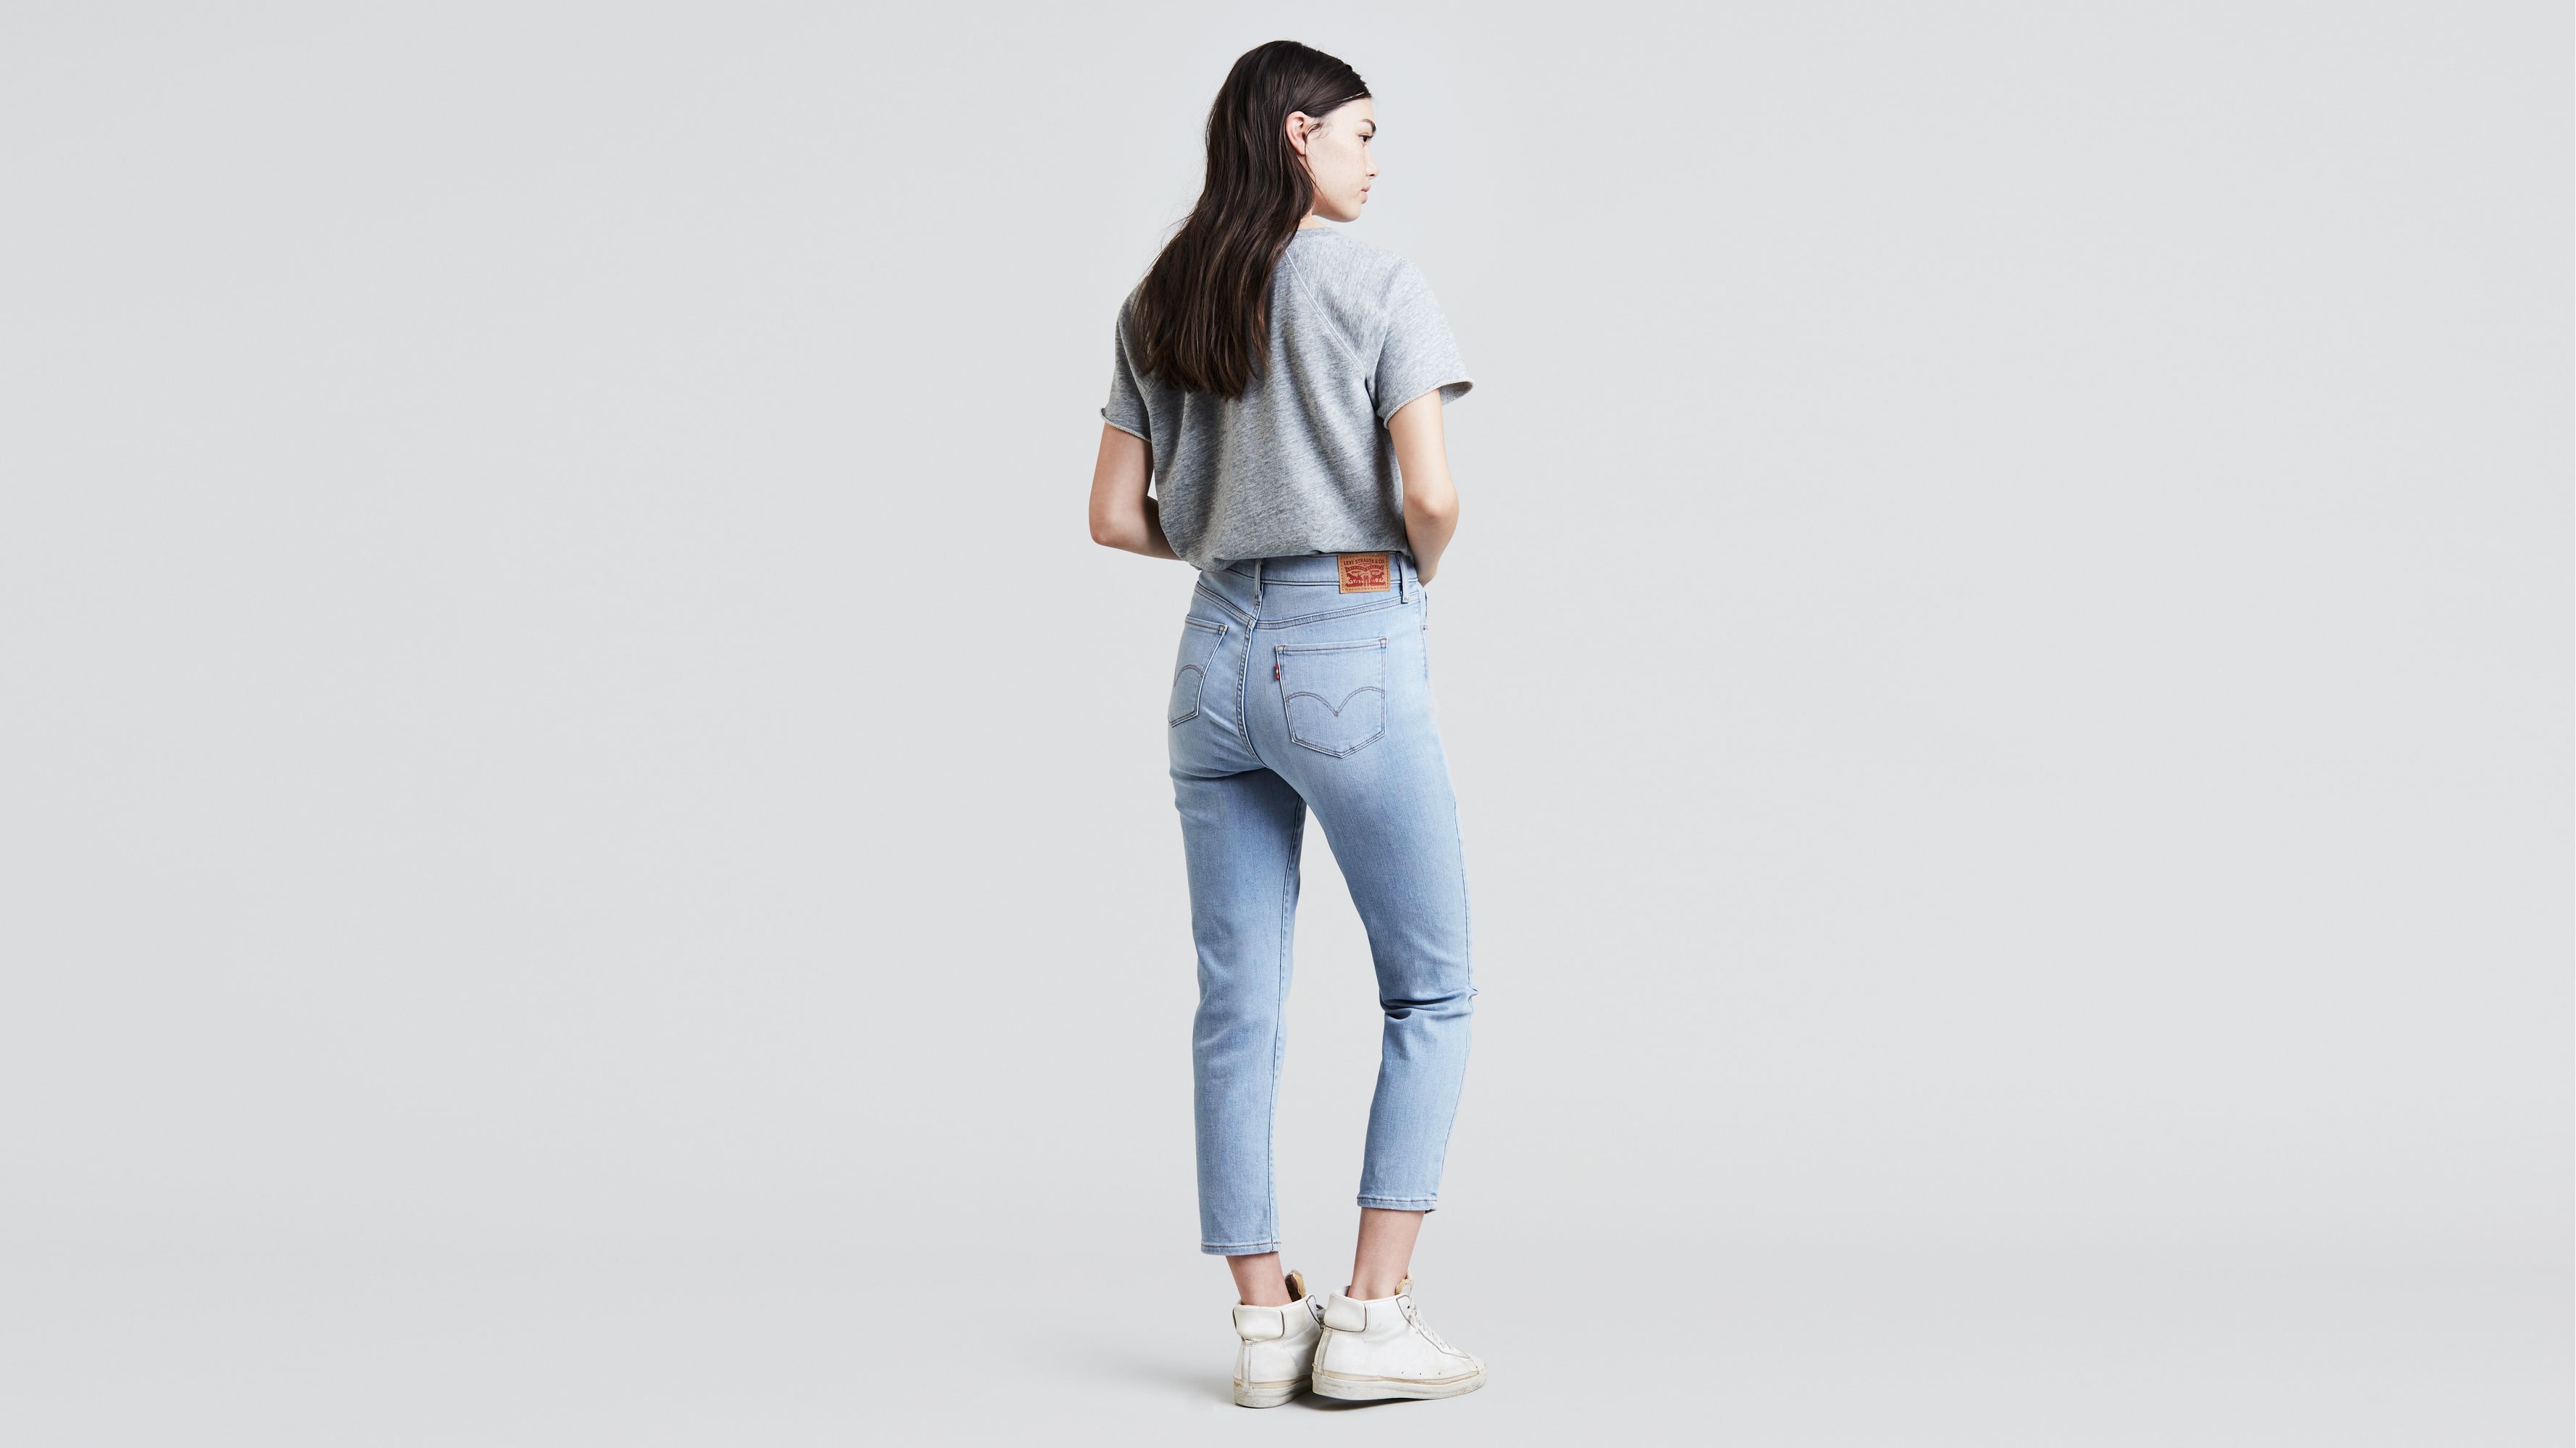 women's classic levi jeans